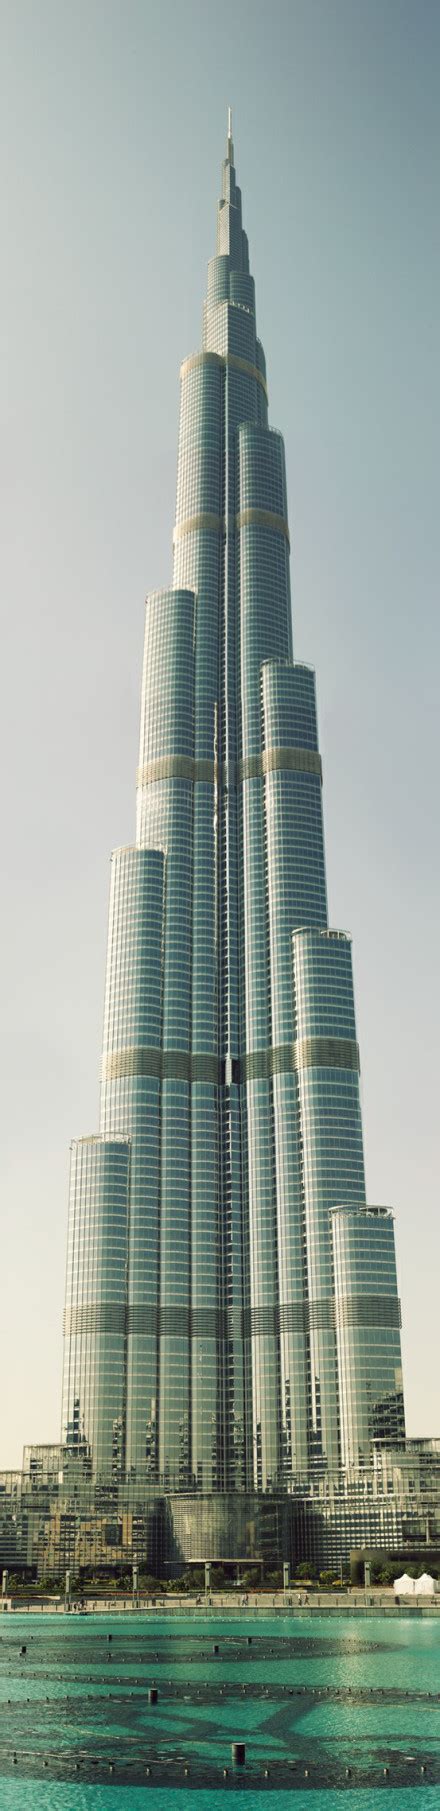 迪拜塔:世界第一高楼 - 堆糖，美图壁纸兴趣社区